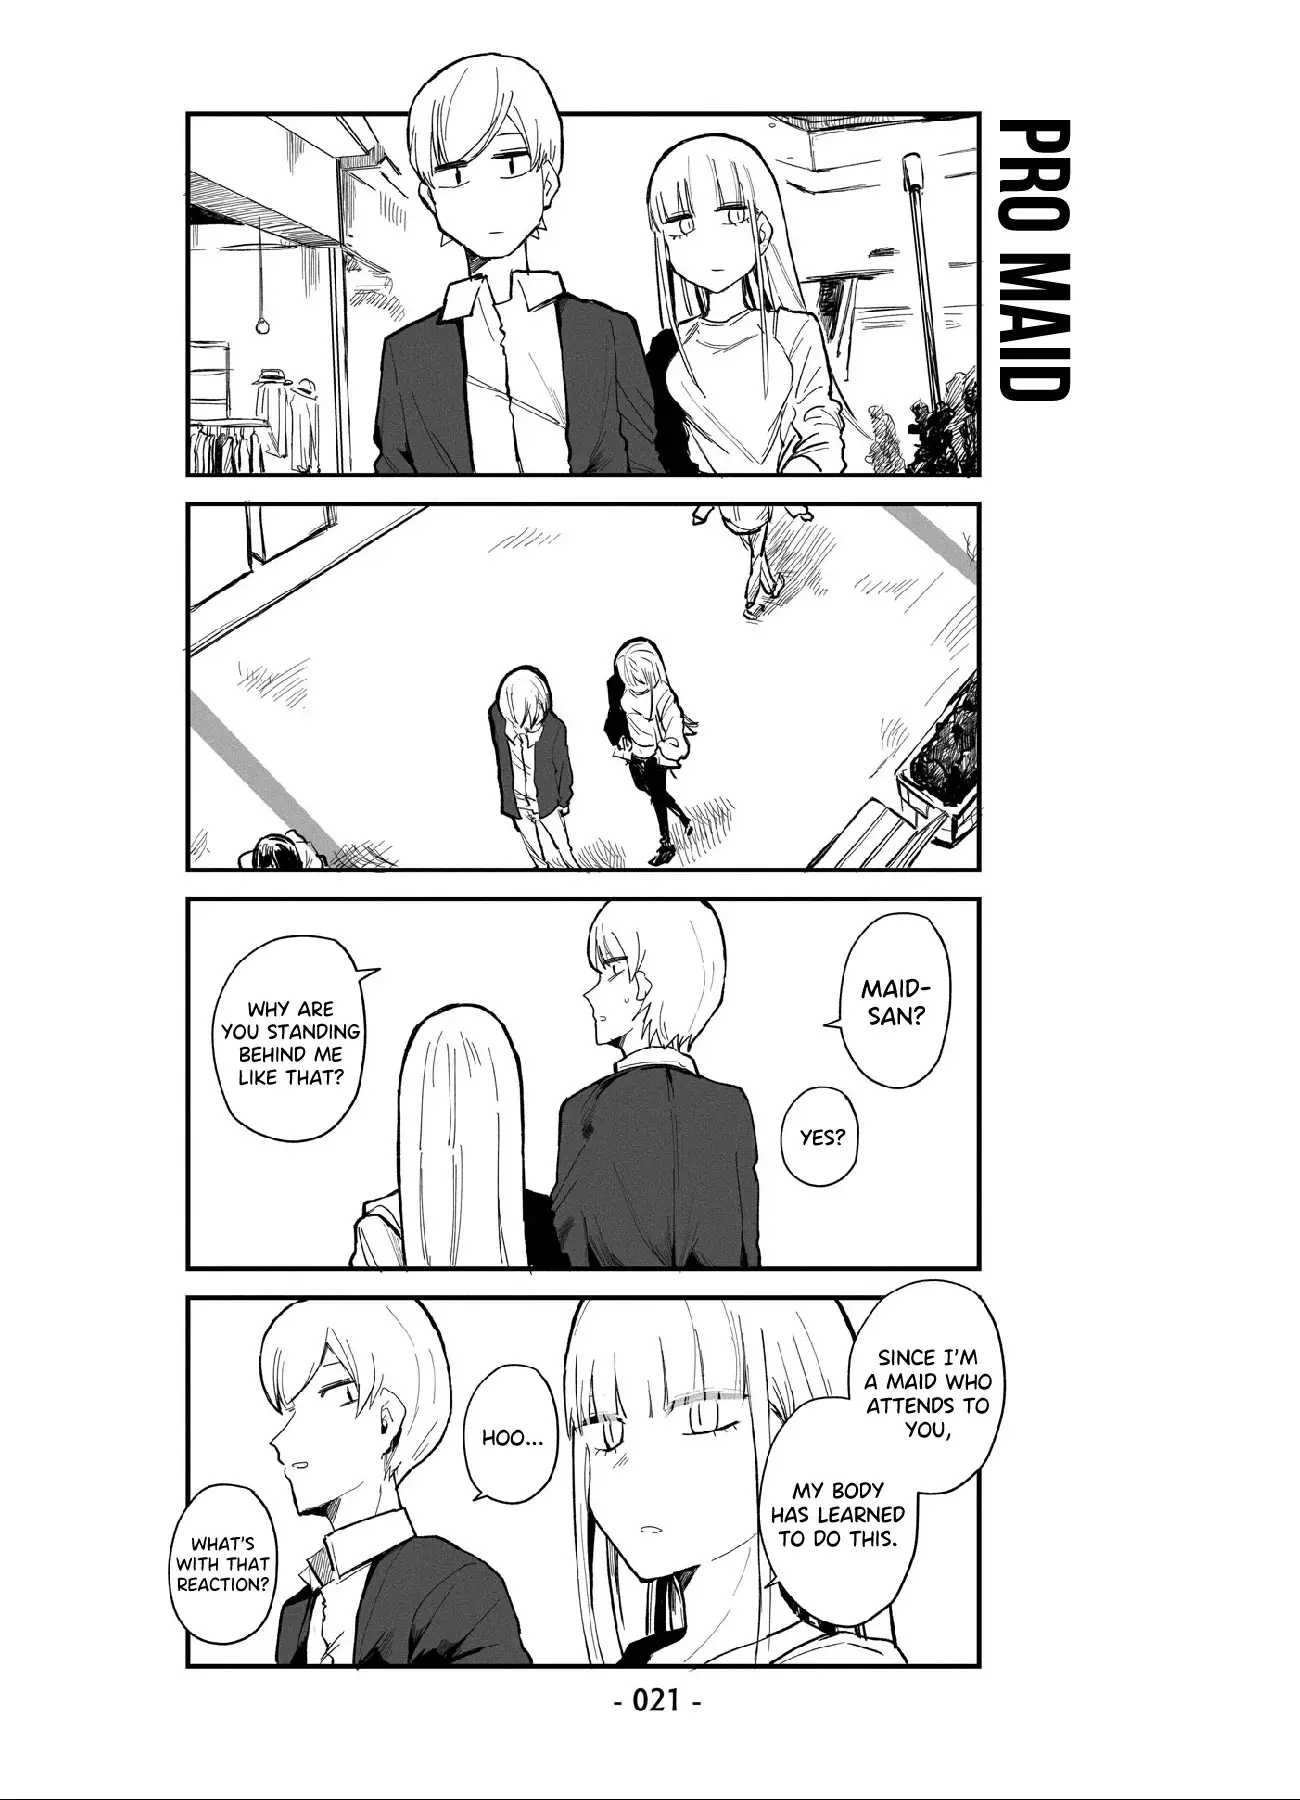 ○○Na Maid-San - 2 page 3